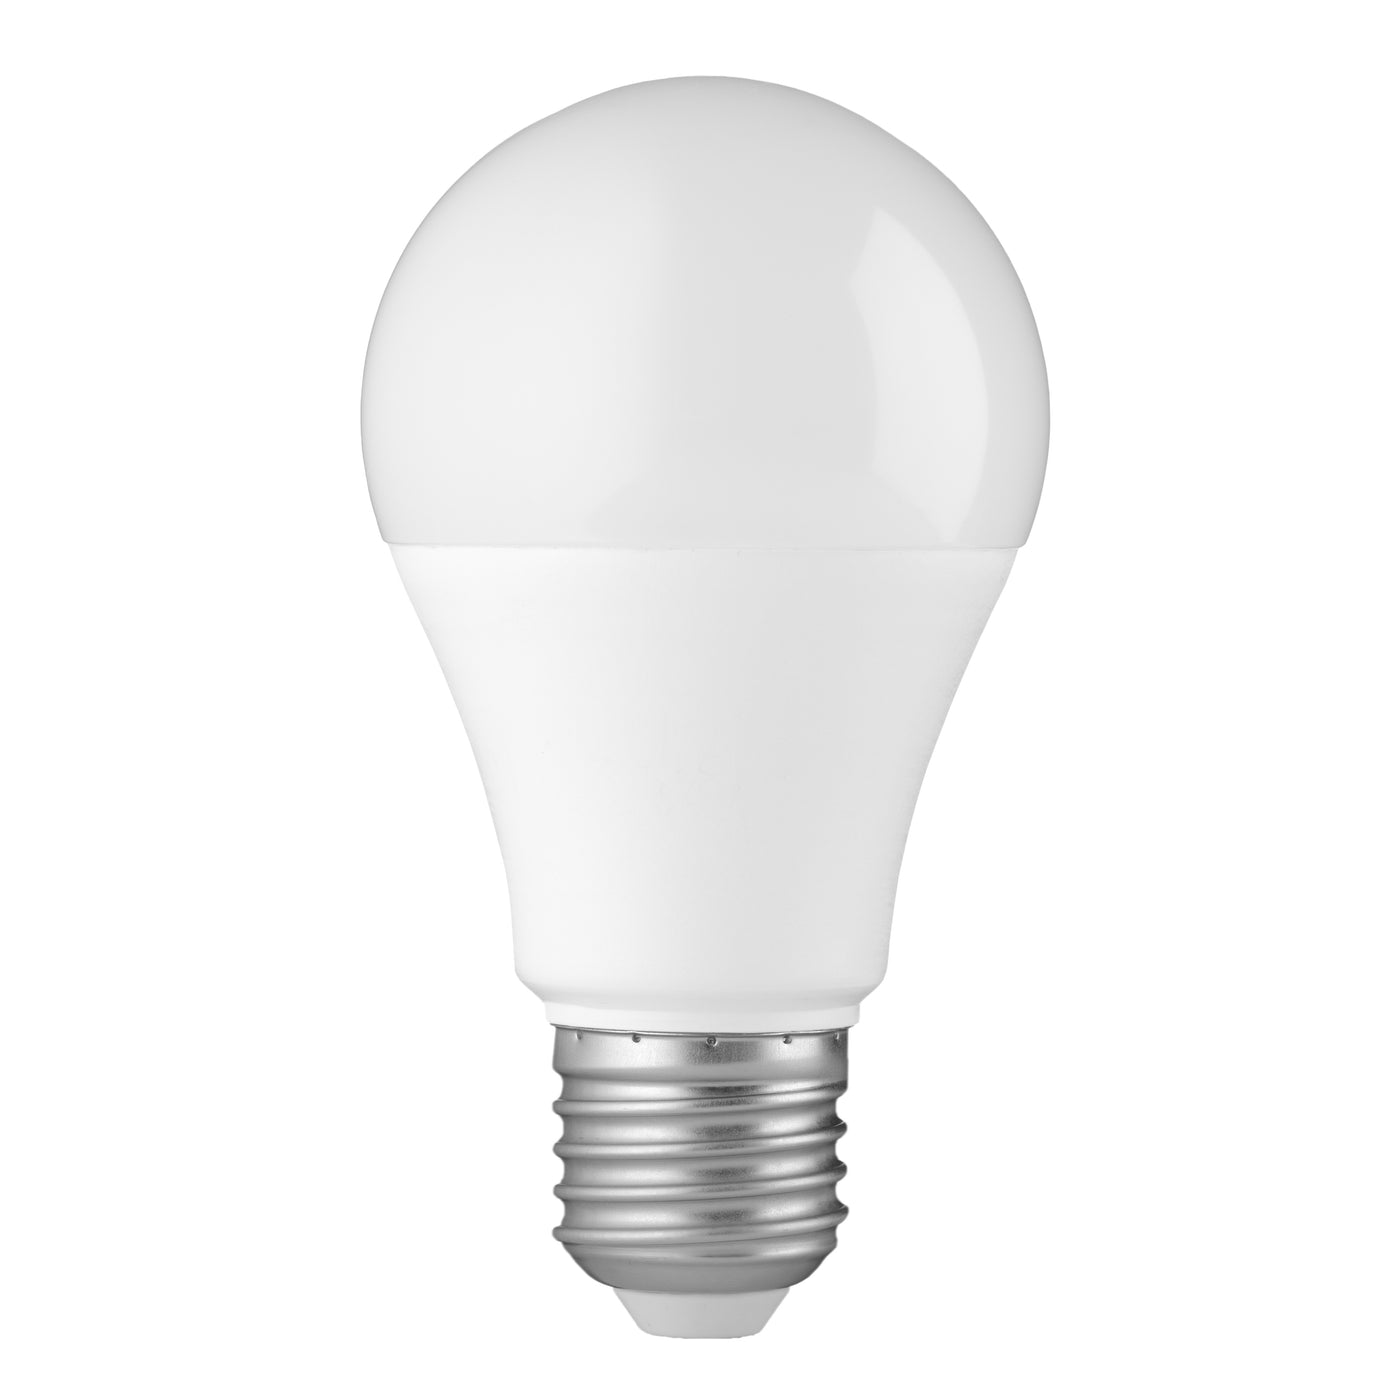 Alecto SMARTBULB10 QUAD - Smarte WLAN LED-Farblampe, E27, 9W, 4er-Pack